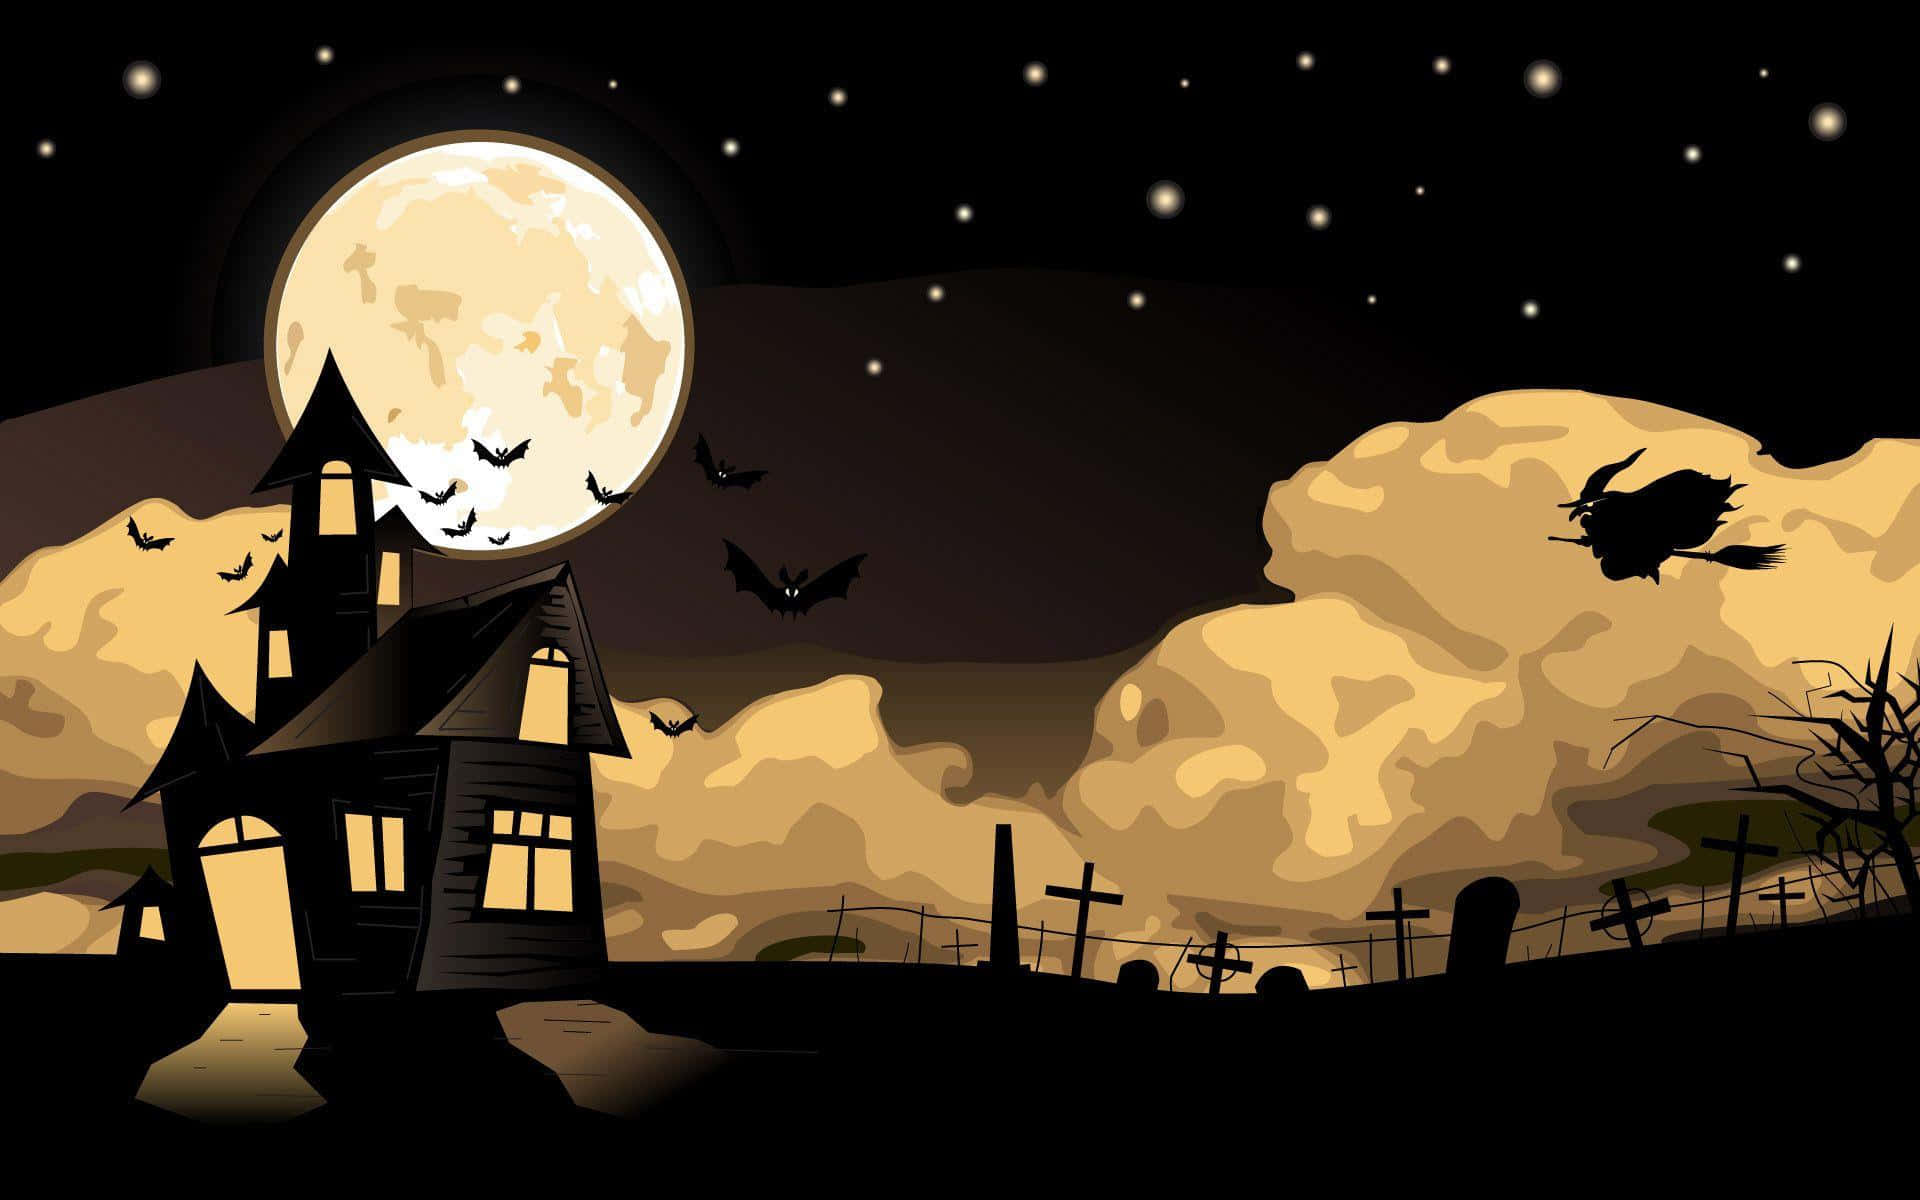 Imagende Una Casa Encantada De Halloween Y Una Silueta De Bruja.